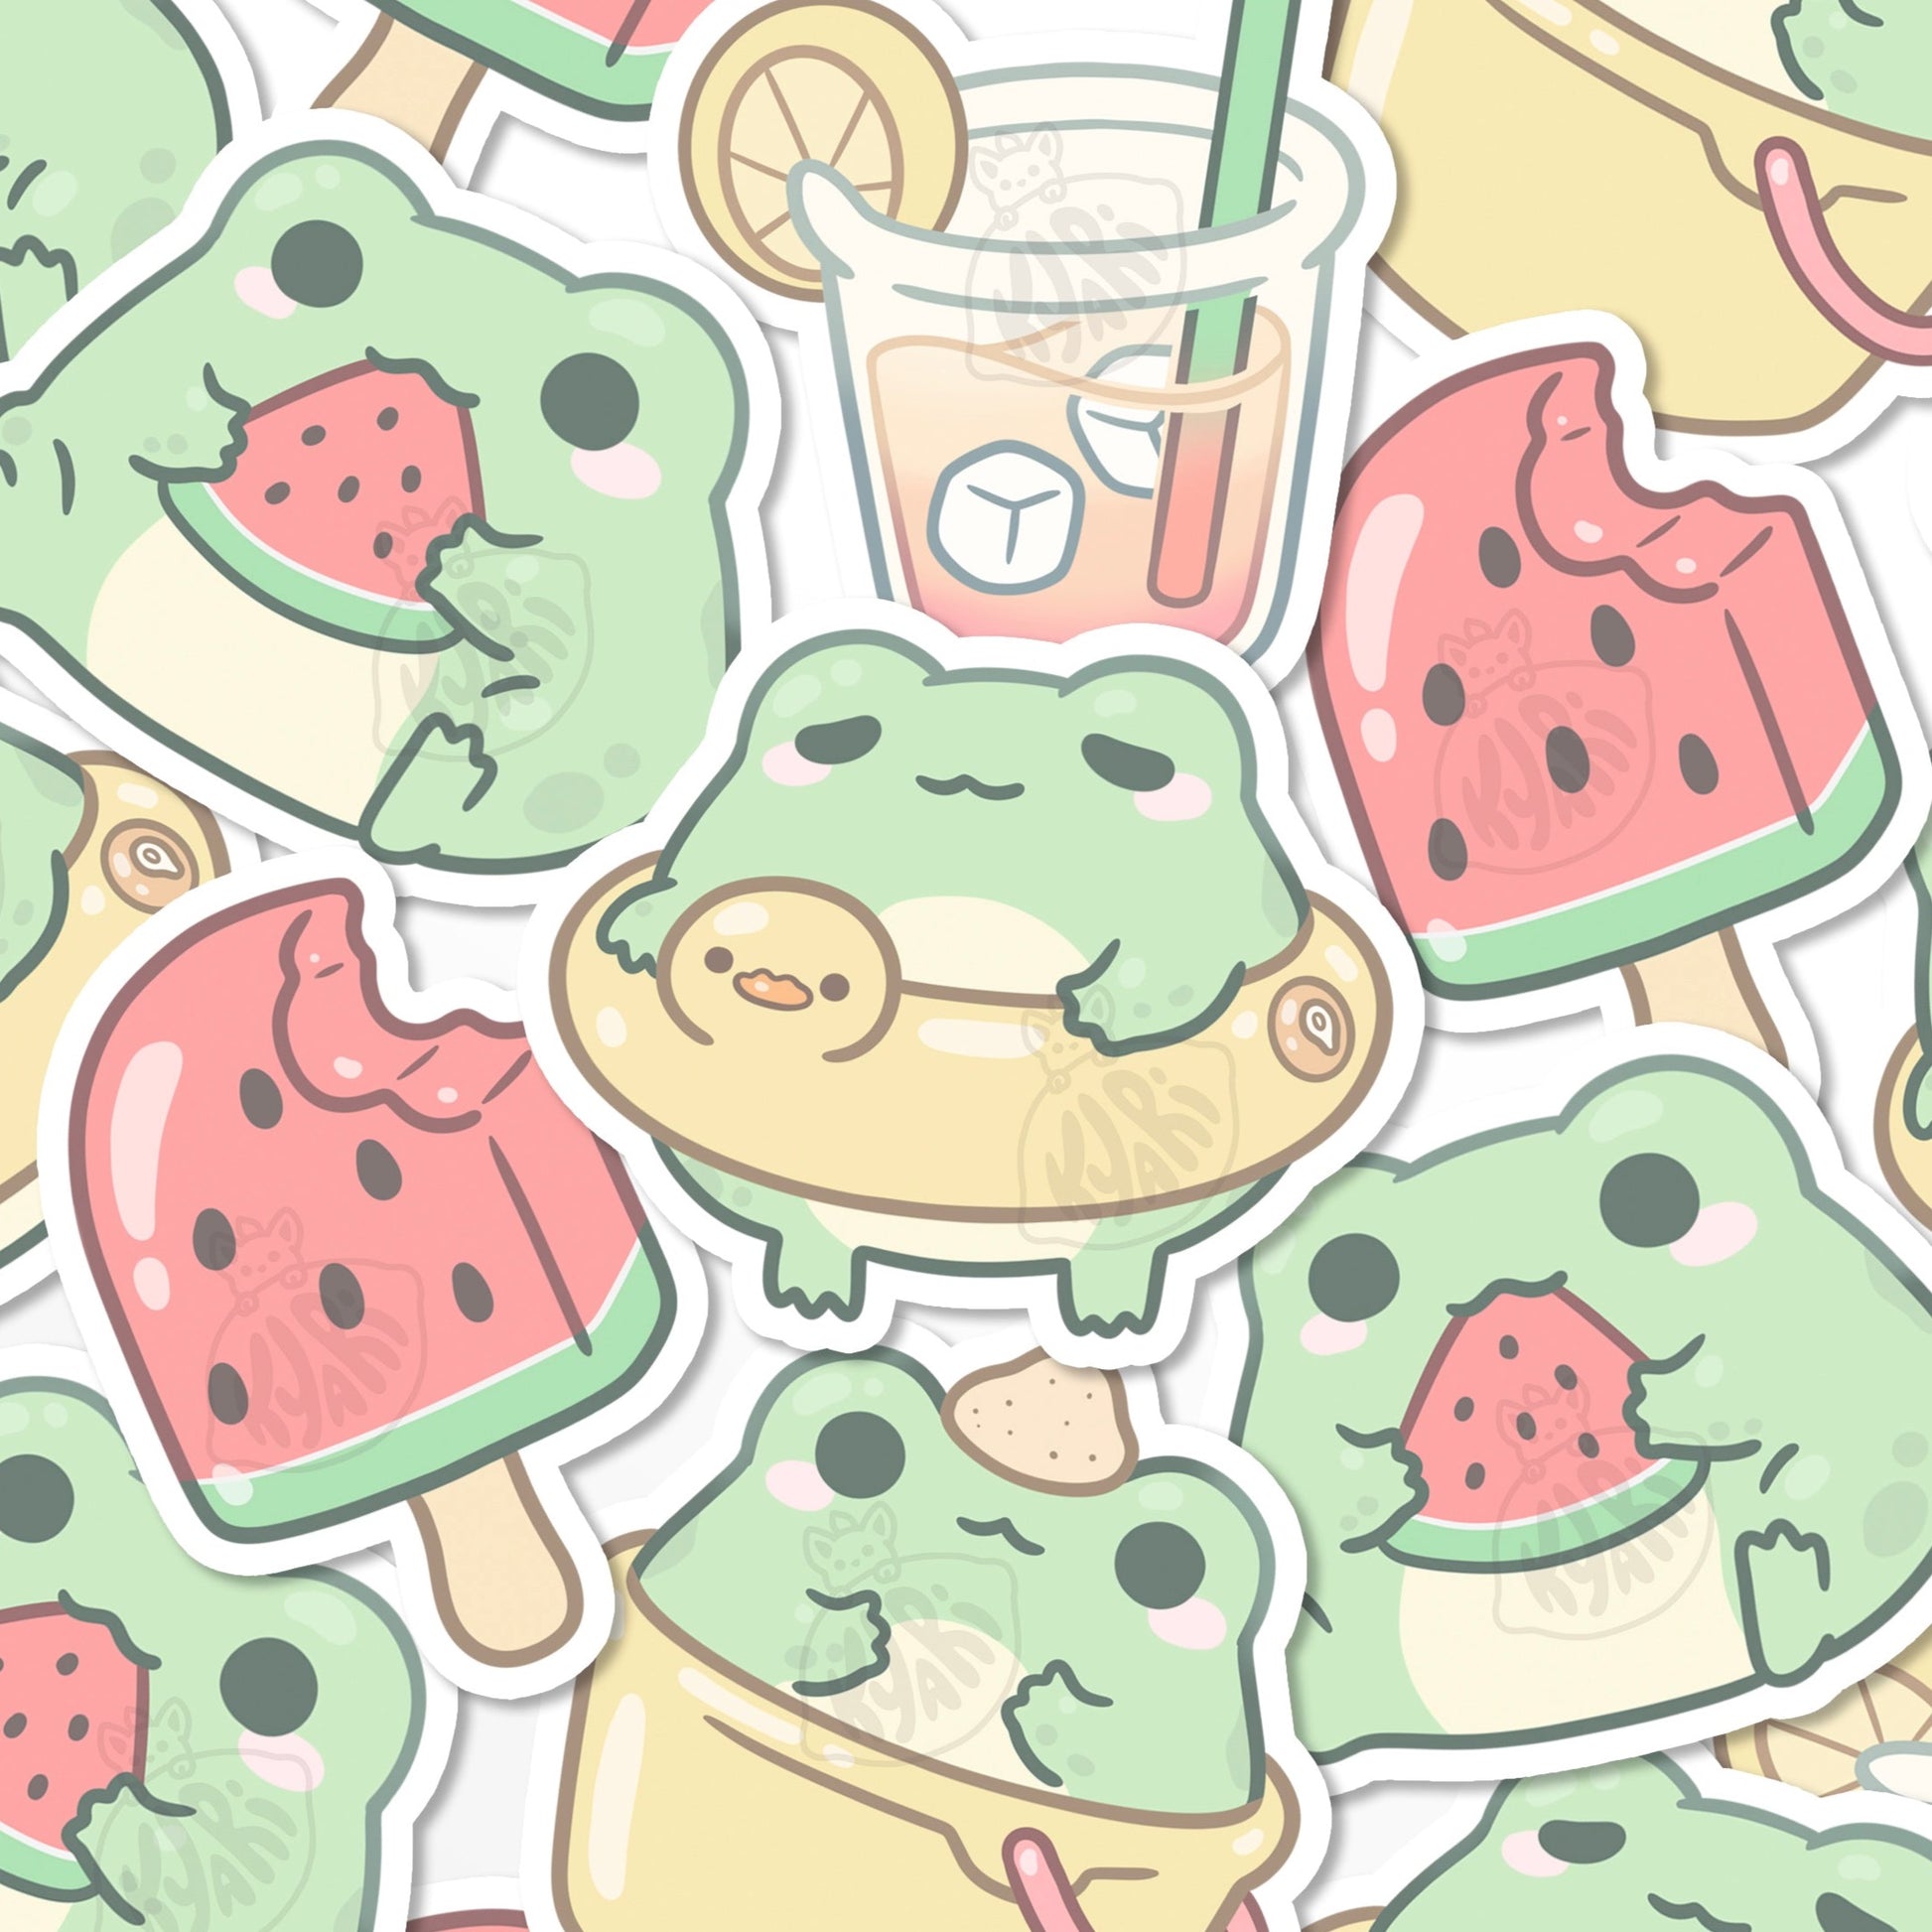 Beach Frog Sticker Set - KyariKreations